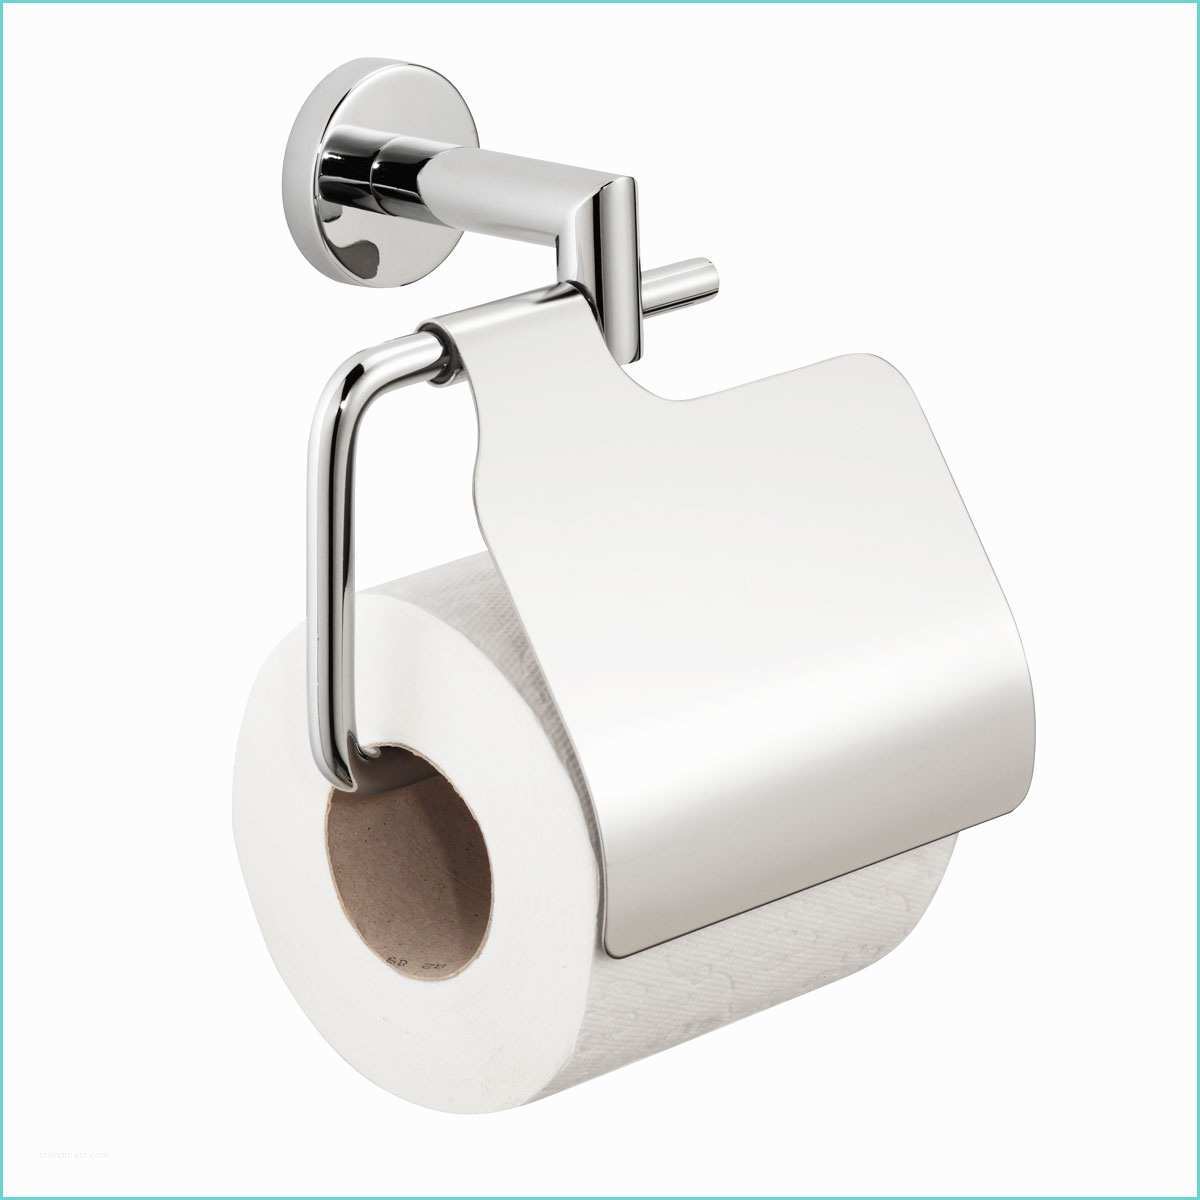 Brosse Wc Castorama Porte Papier toilette Wikilia